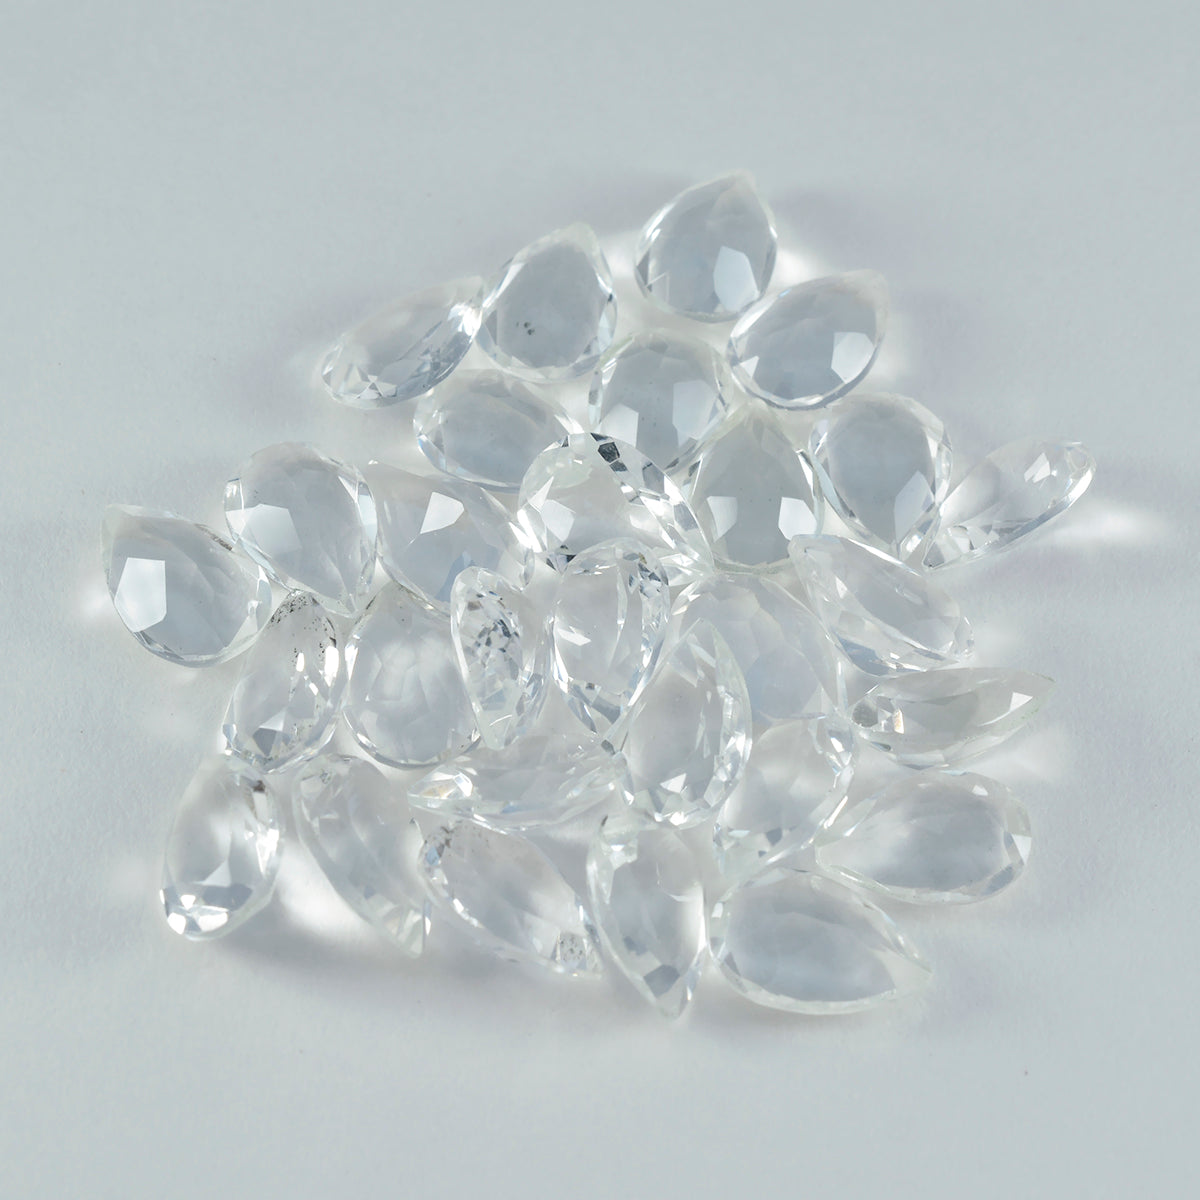 riyogems 1шт белый кристалл кварца ограненный 6x9 мм камень грушевидной формы фантастического качества